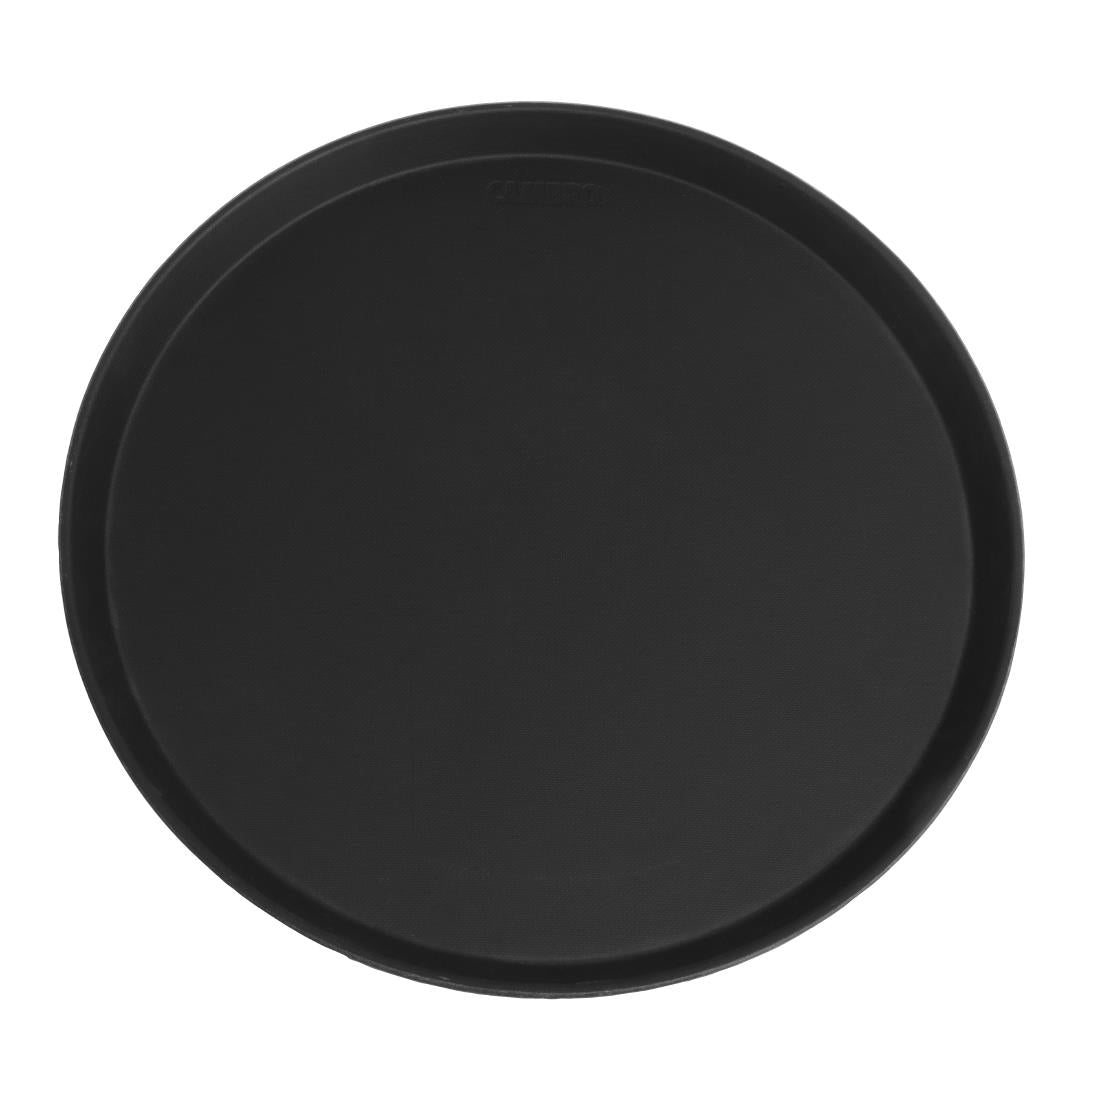 Cambro Camtread Fibreglass Round Non-Slip Tray Black 405mm